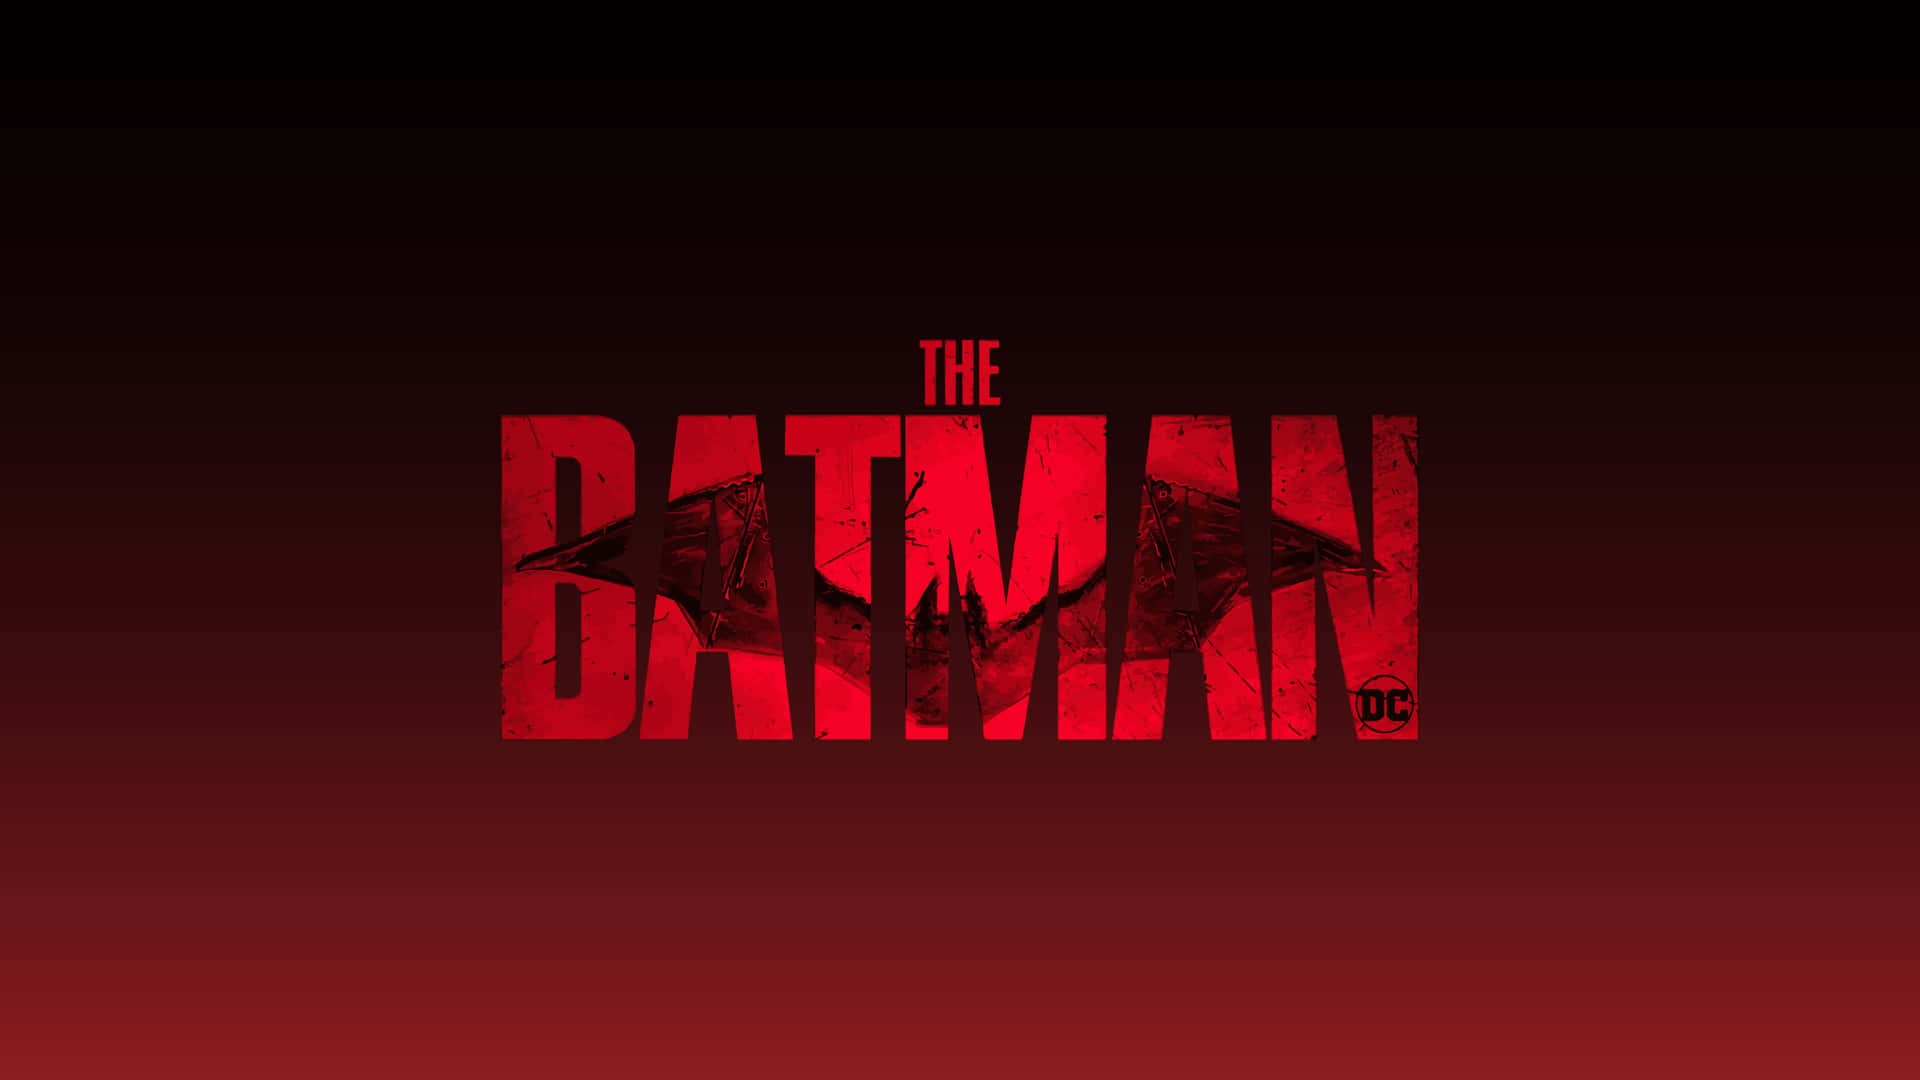 Dasbatman-logo Auf Einem Roten Hintergrund Wallpaper